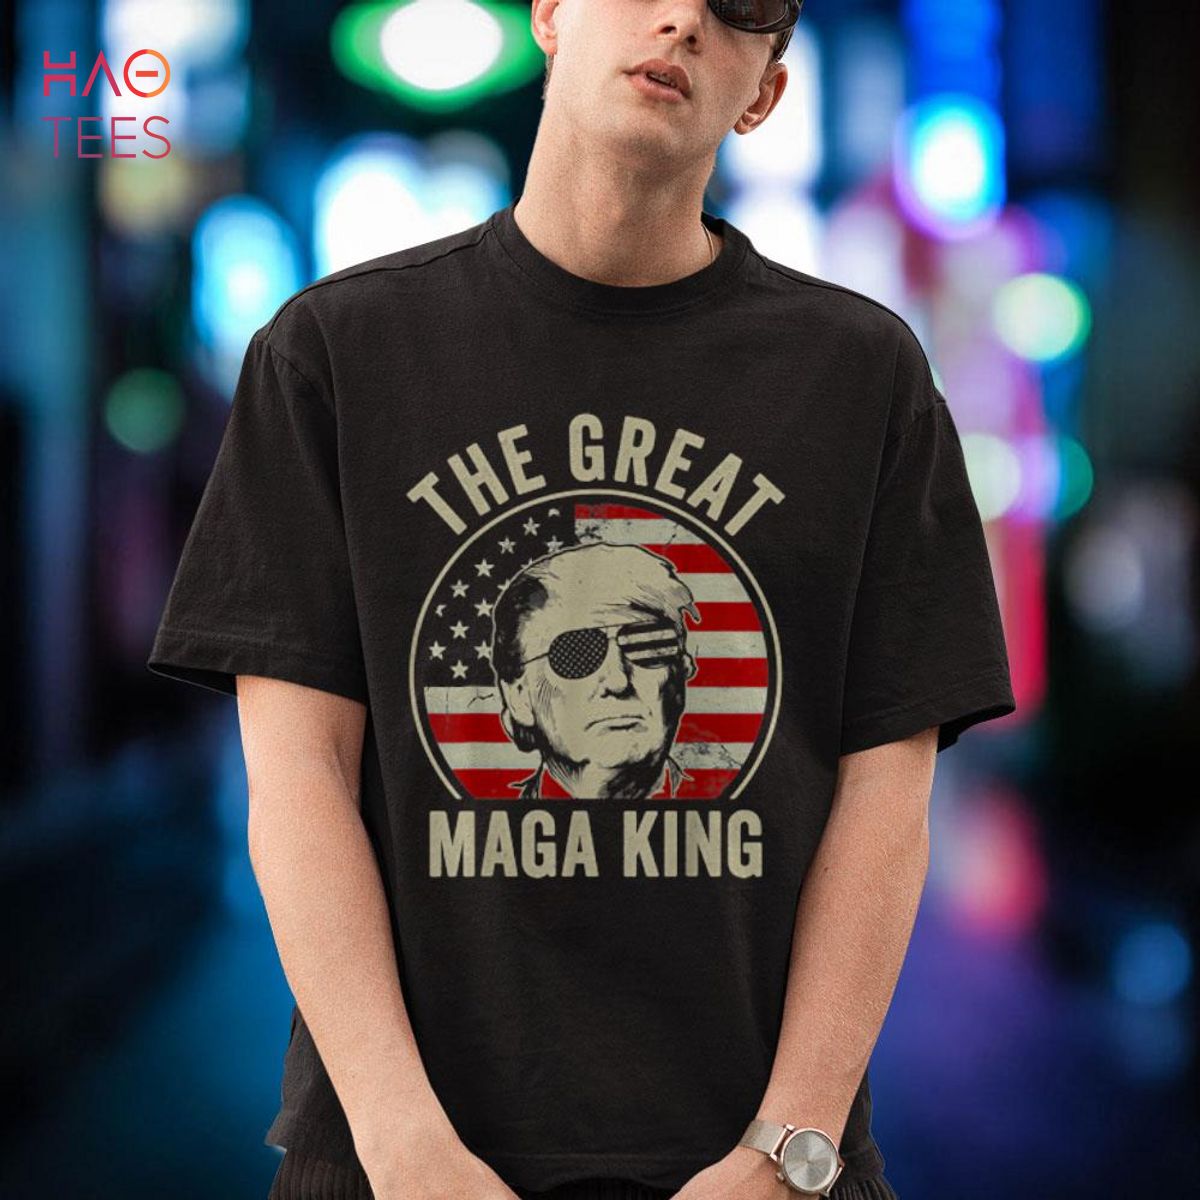 NEW TREND The Great Maga King Funny Trump Ultra Maga King Shirt